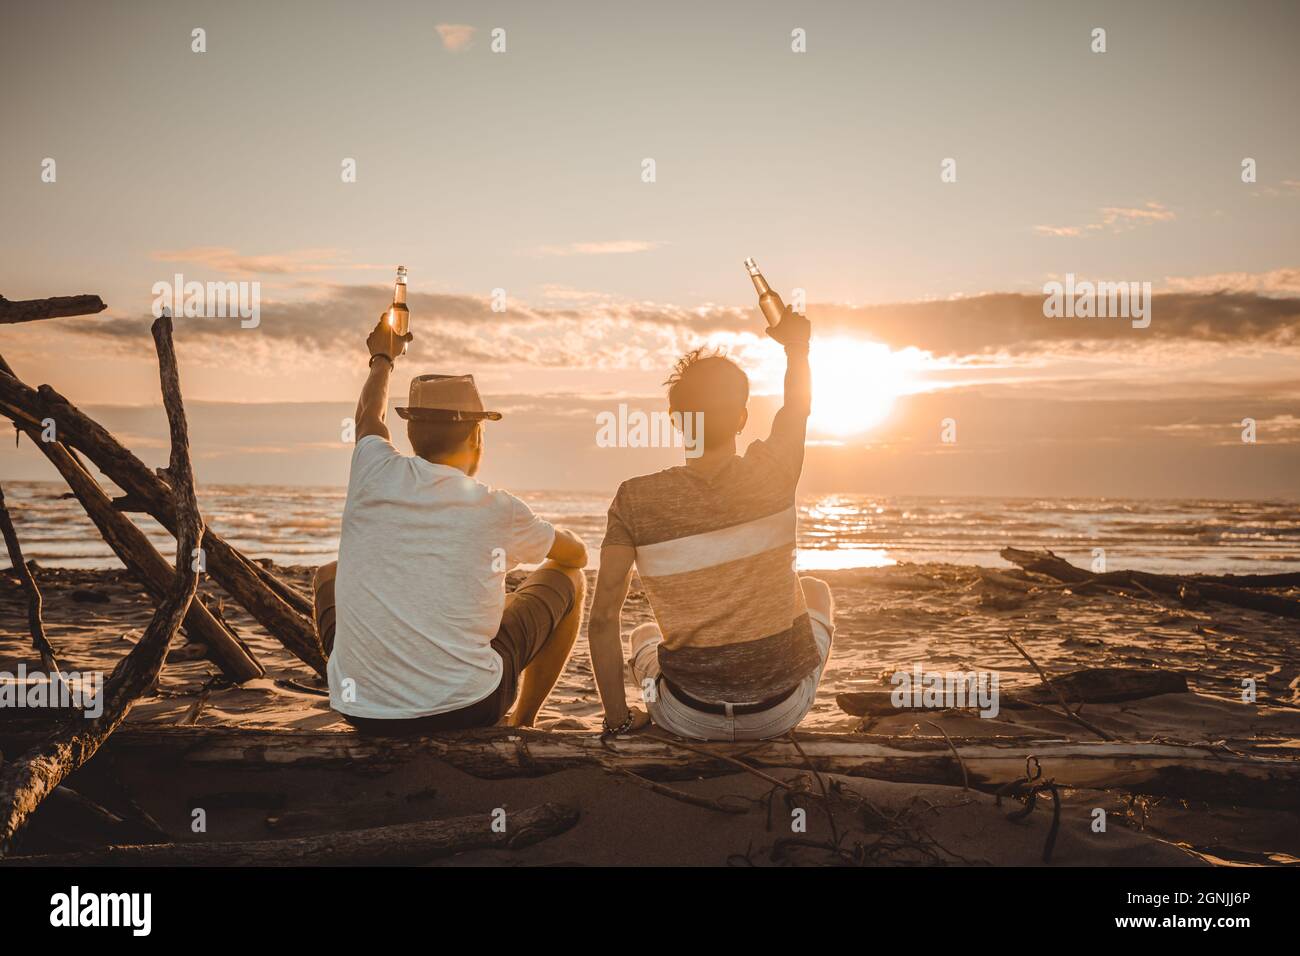 Deux jeunes amis passent du temps ensemble assis sur la plage, buvant de la bière et dorlotant en vacances au crépuscule au coucher du soleil. Concept d'amitié Banque D'Images